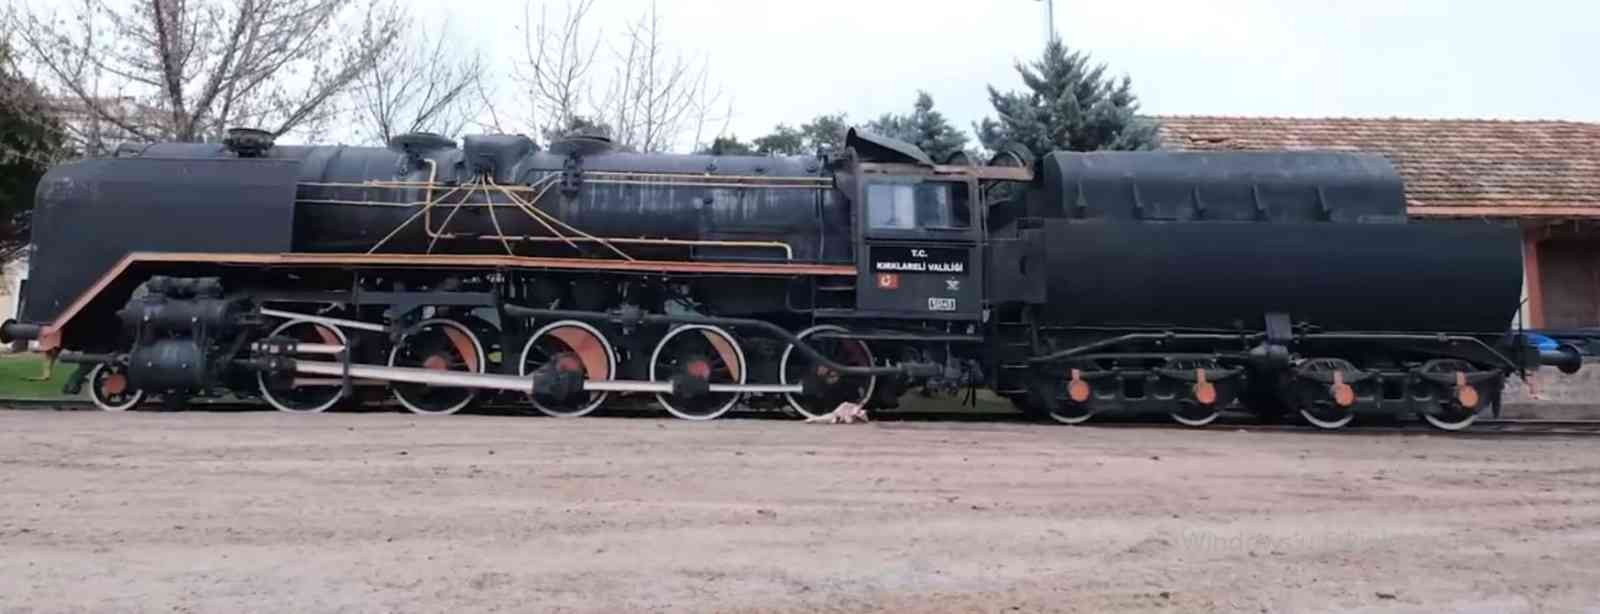 Nostaljik Kara Tren Kırklareli Millet Bahçesinde Sergilenecek